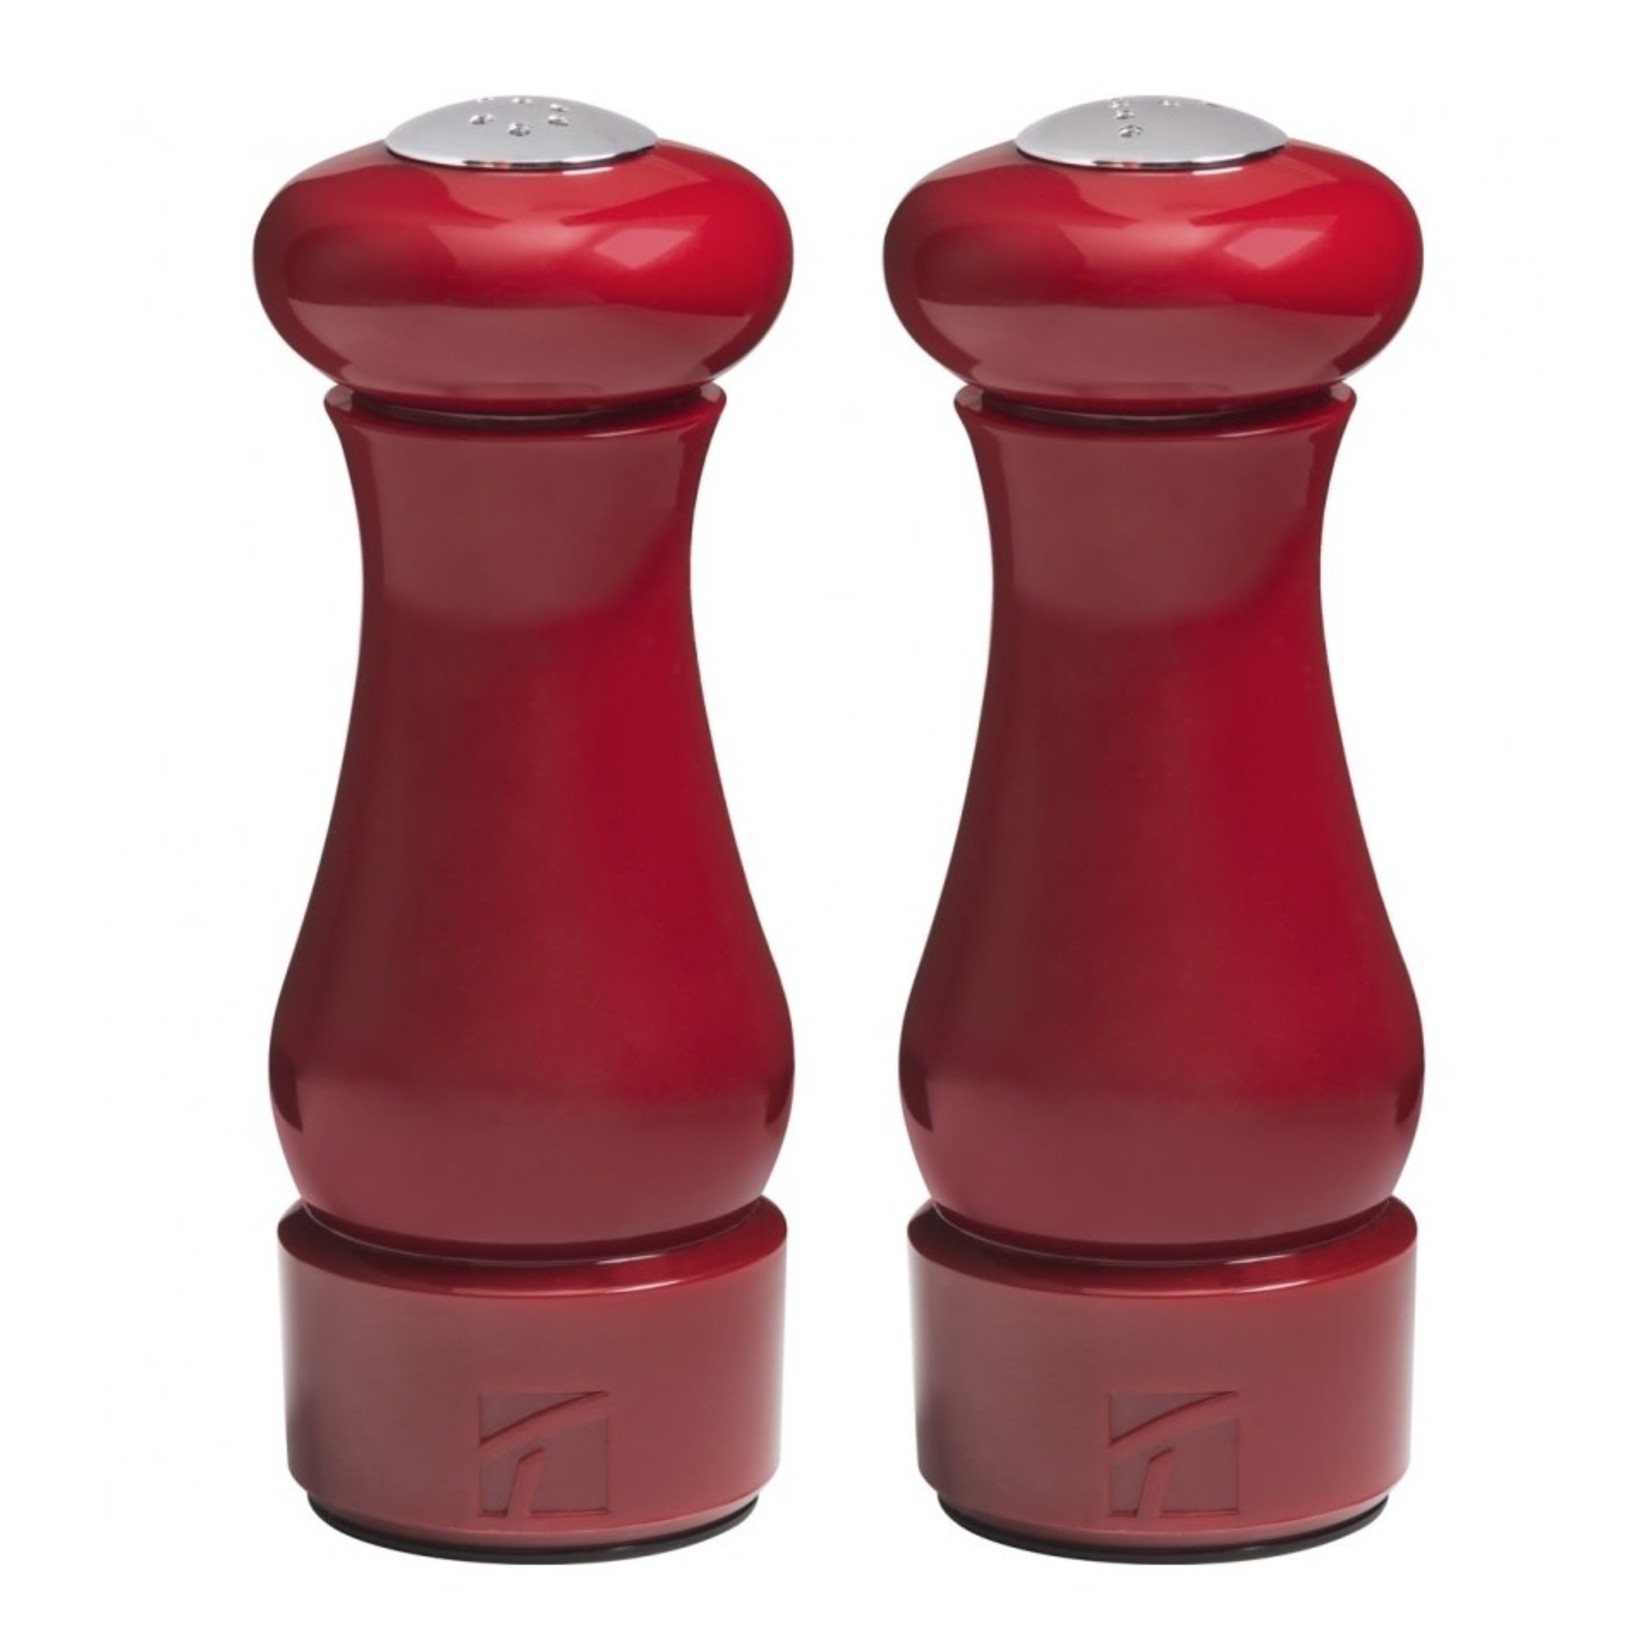 TRUDEAU TRUDEAU Maya Salt & Pepper Shakers 4.5" - Red DNR